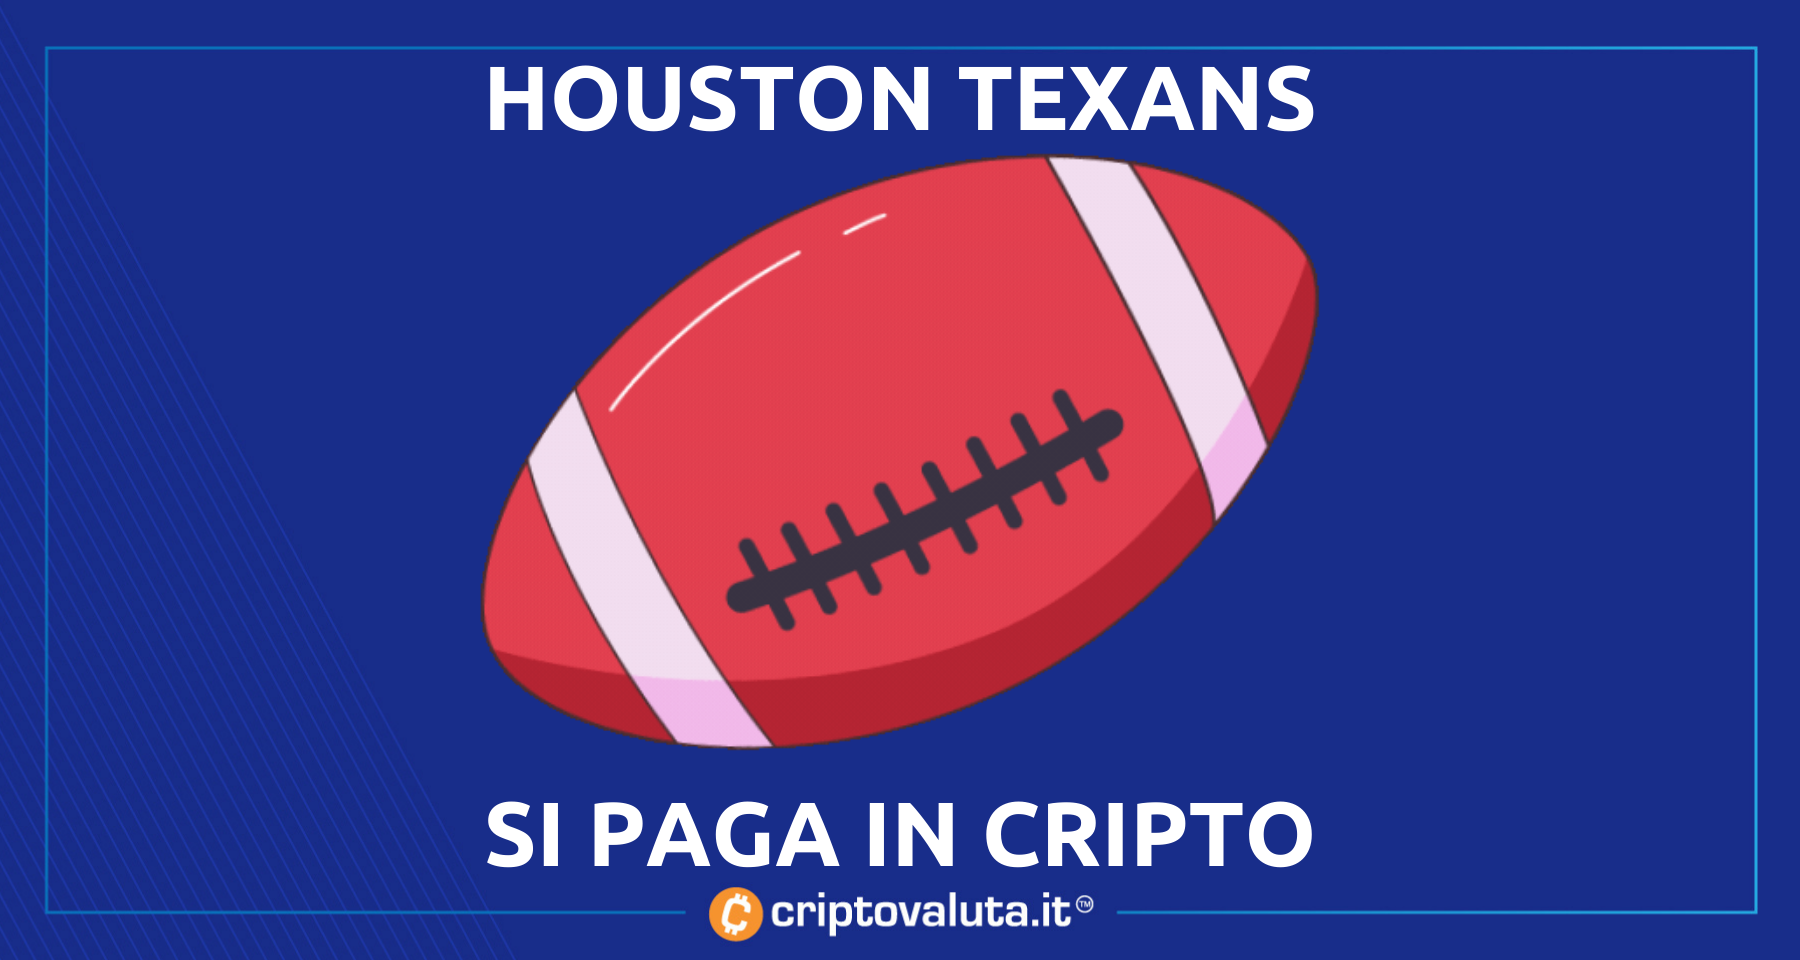 Bitcoin, Ethereum e cripto per pagare lo stadio | L’iniziativa degli Houston Texans